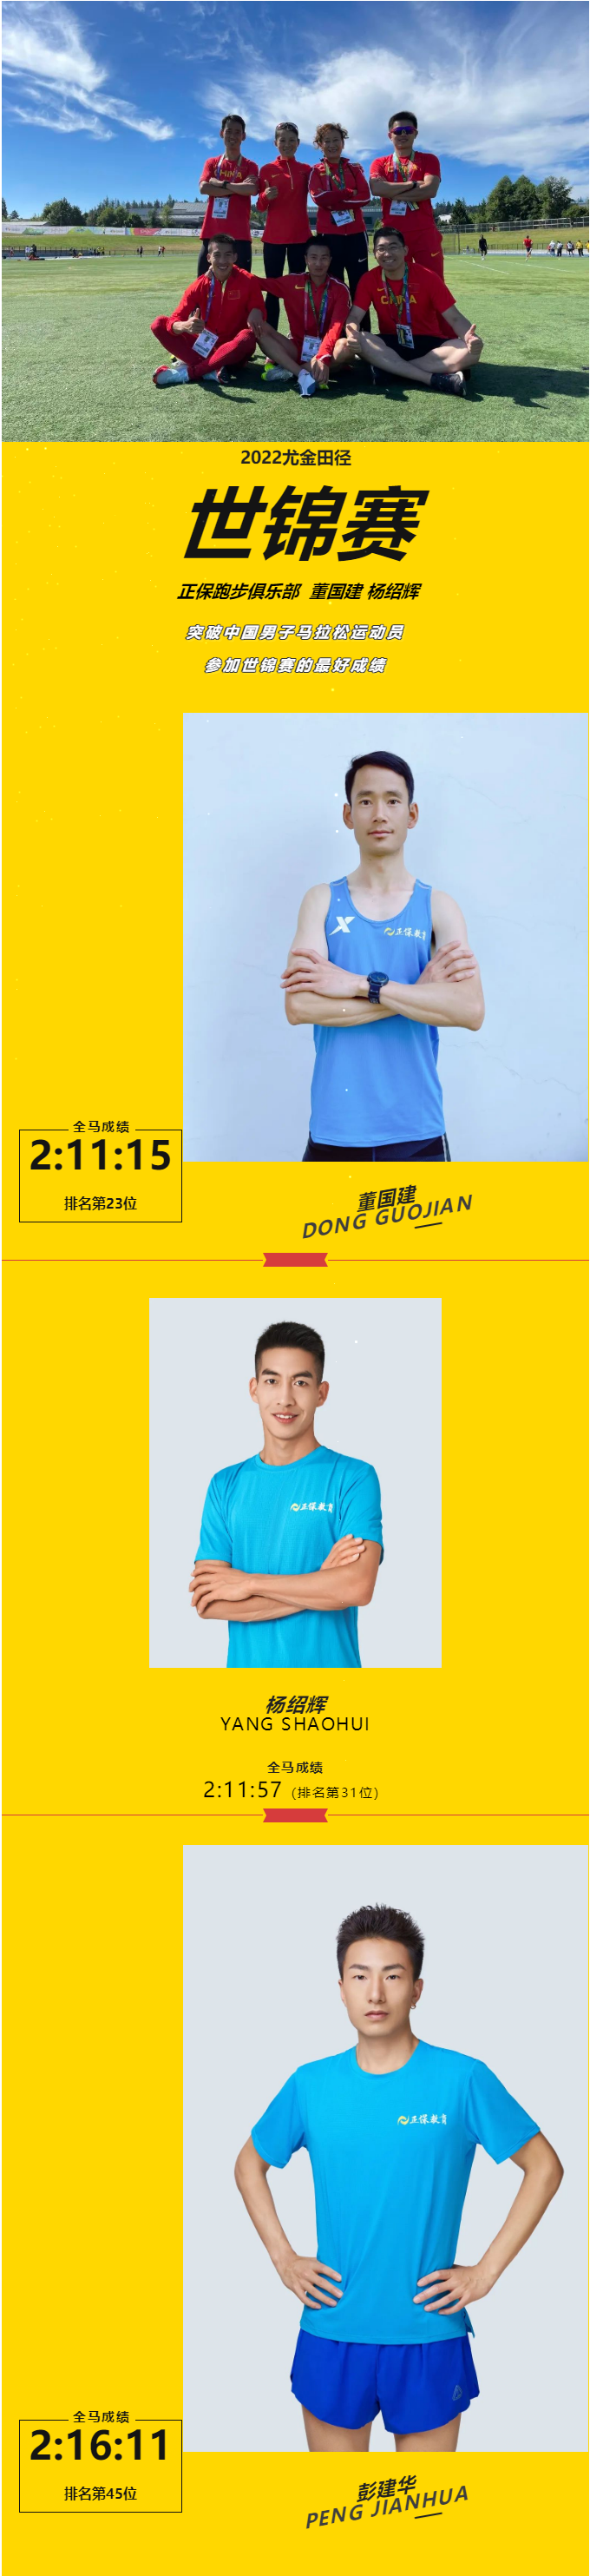 祝贺董国建、杨绍辉突破中国男子马拉松运动员参加世锦赛的最好成绩！